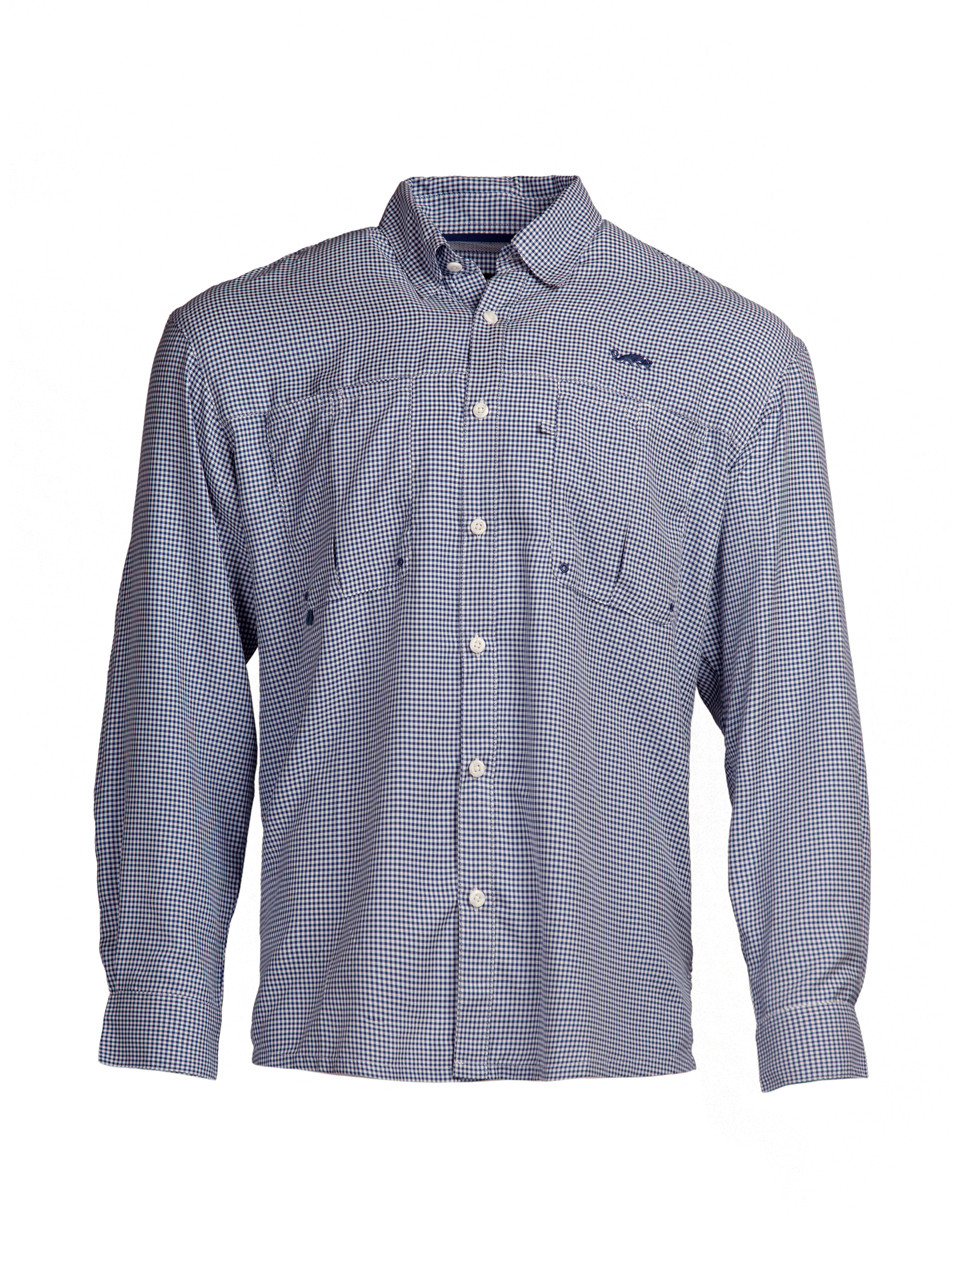 Intracoastal Long Sleeved Fishing Shirt - Navy Check - Natural Gear